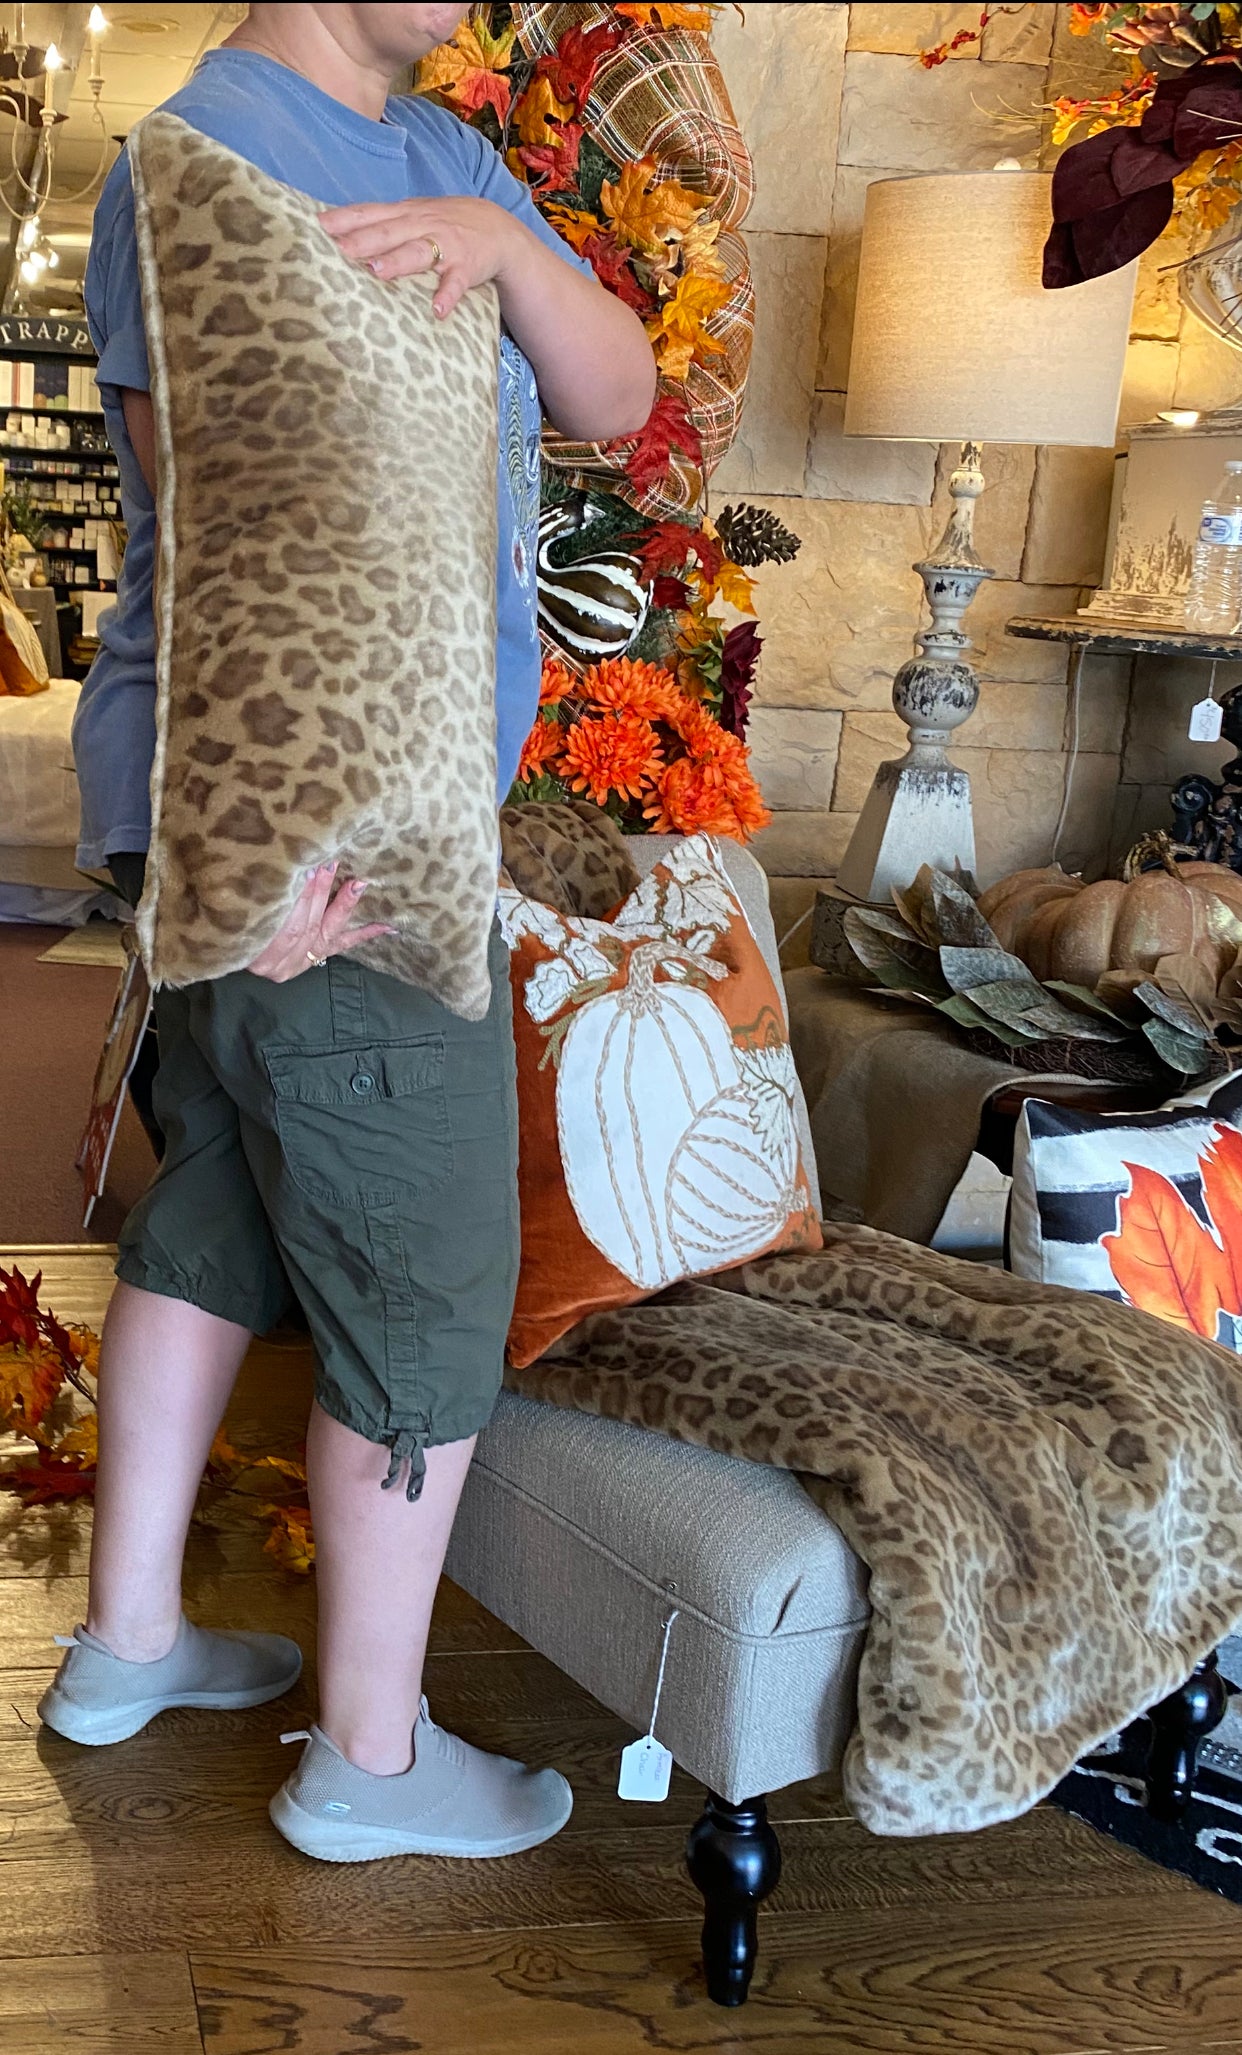 Vintage Leopard Faux Fur Rectangle Pillow